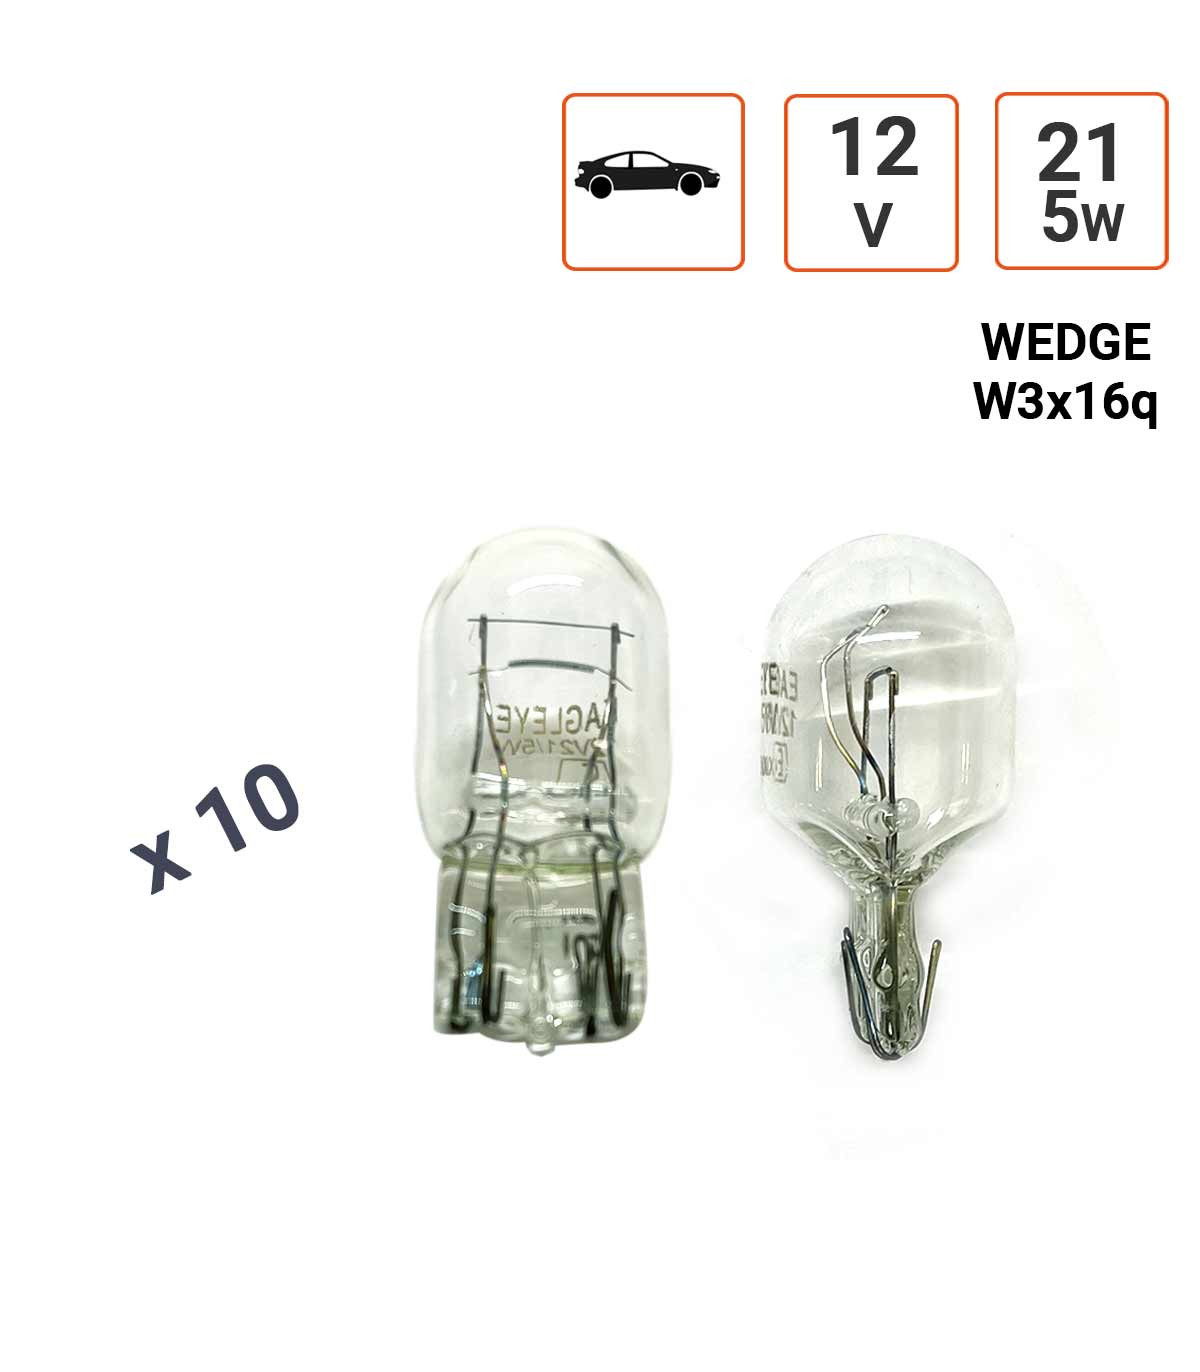 Ampoule 12V H11 55W (vendu à l'unité) pas cher